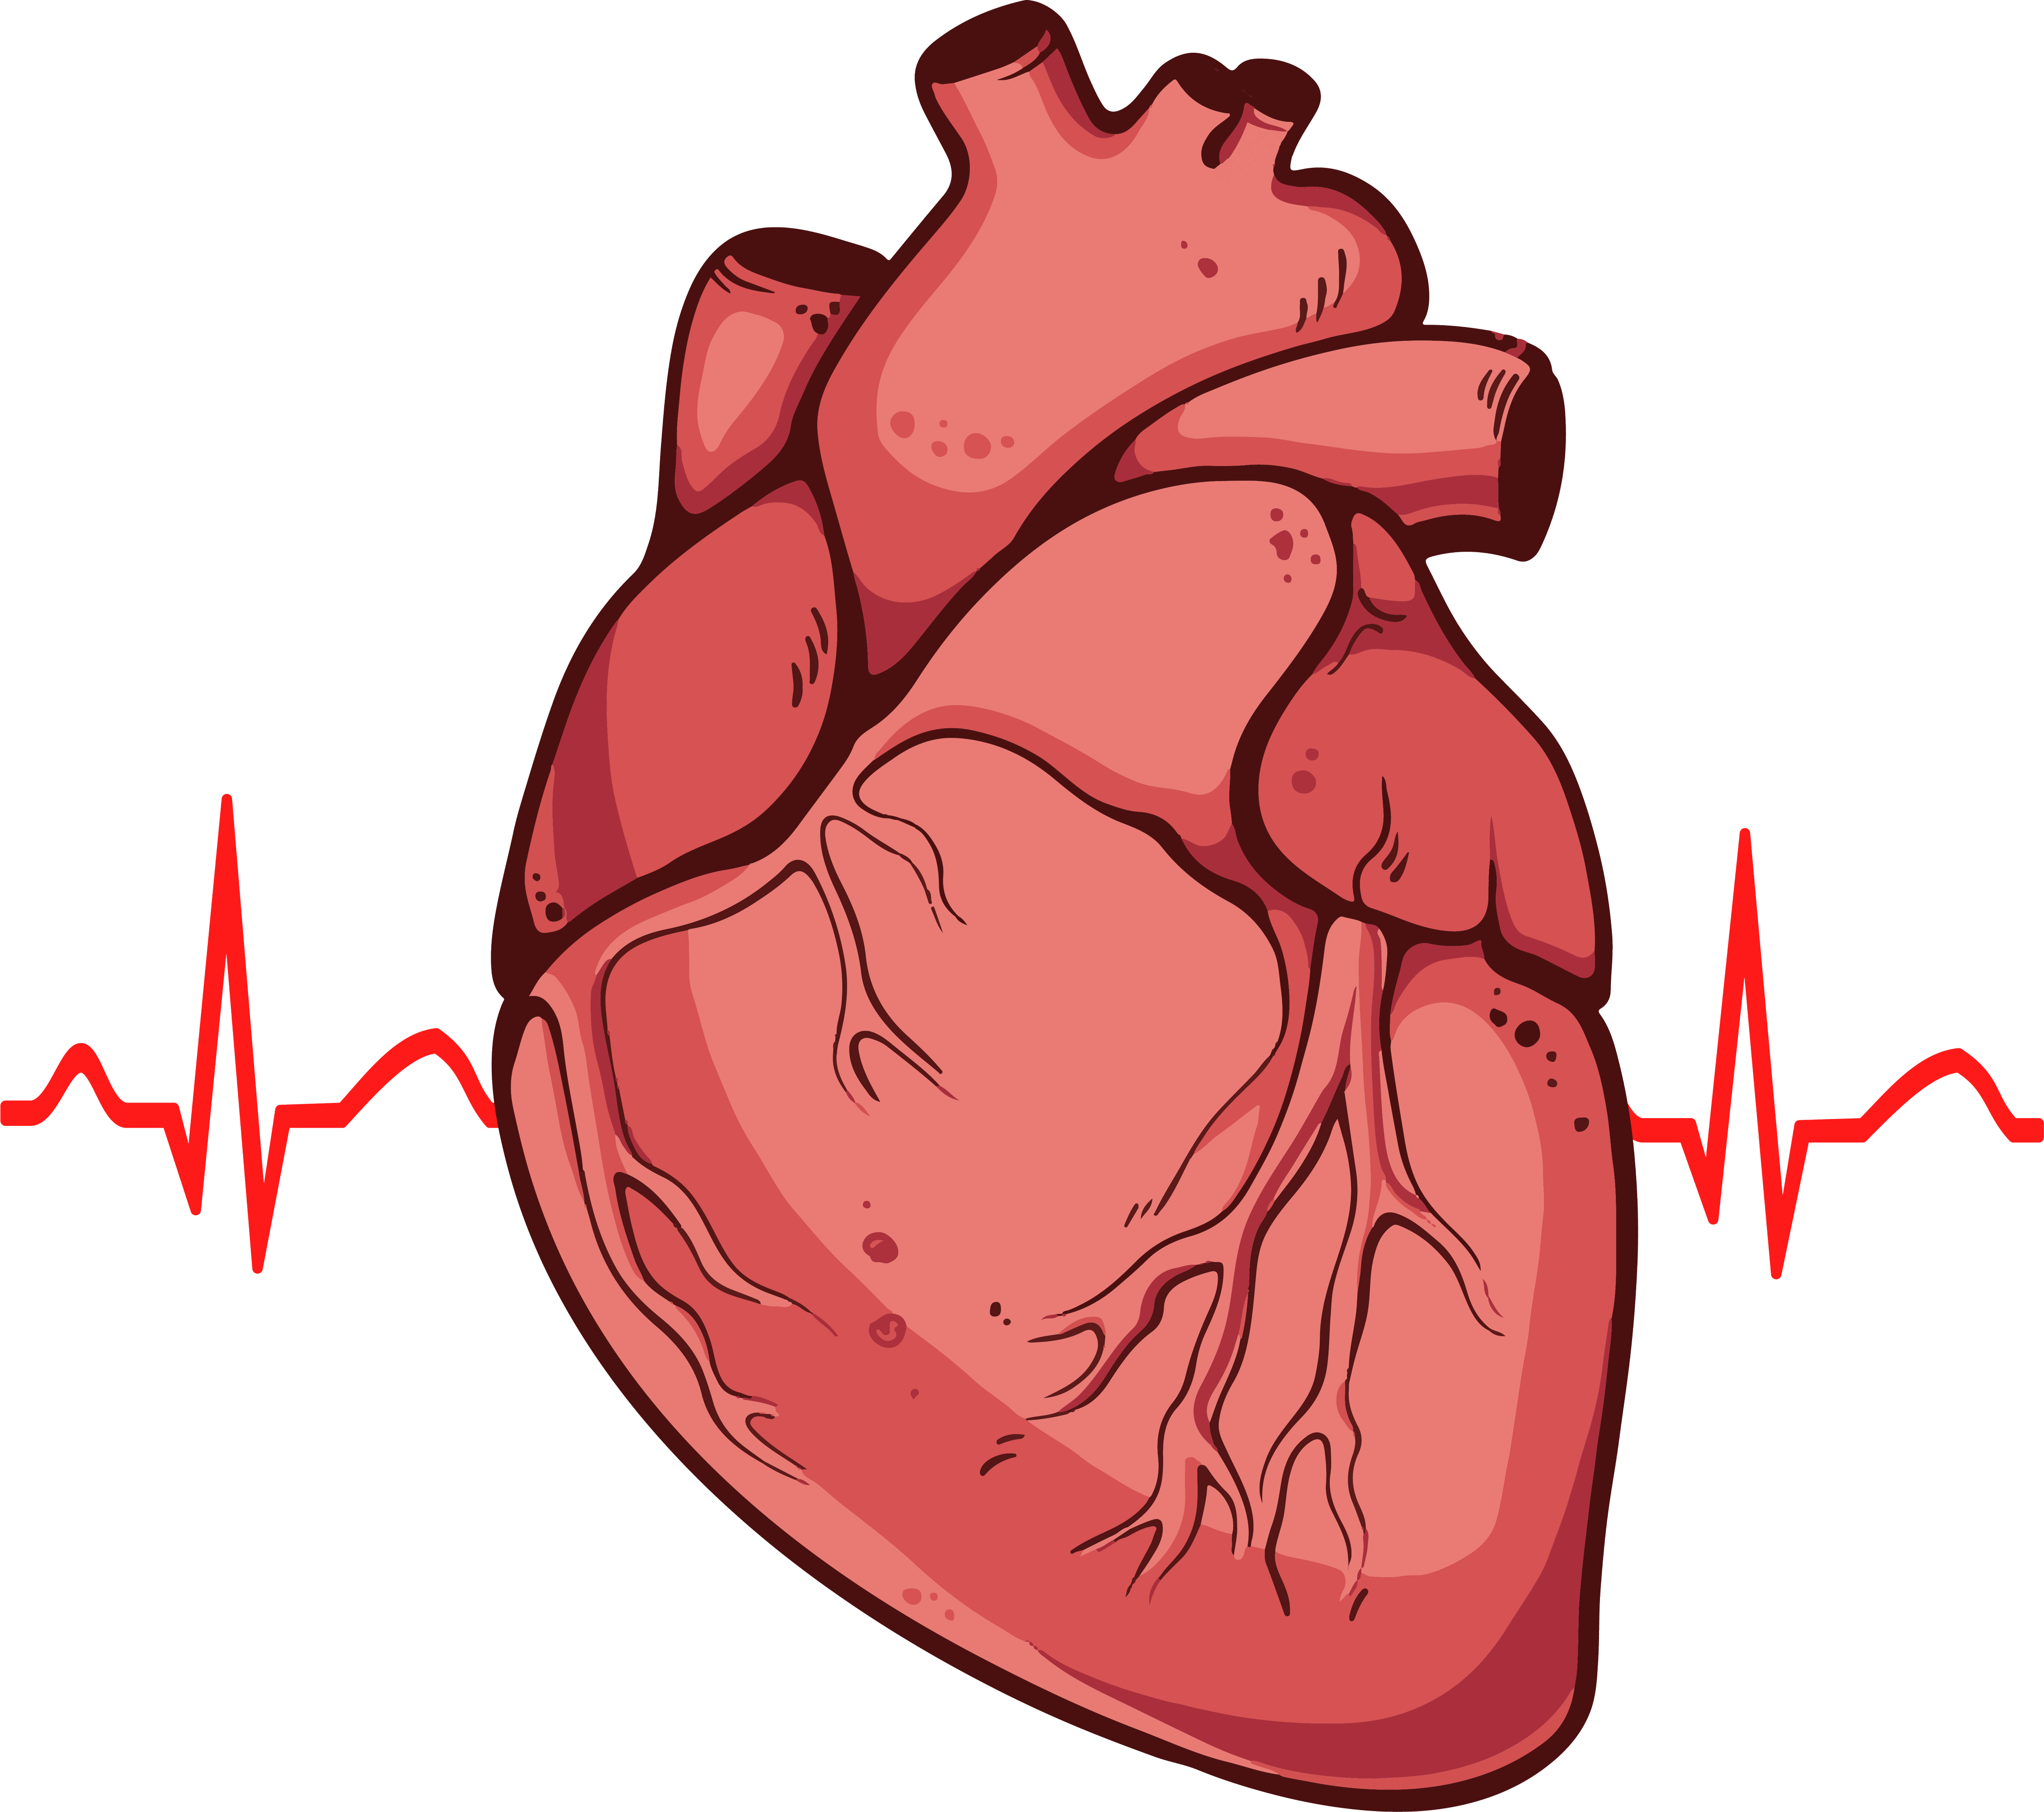 Immagine Trasparente del cuore umano rosso PNG